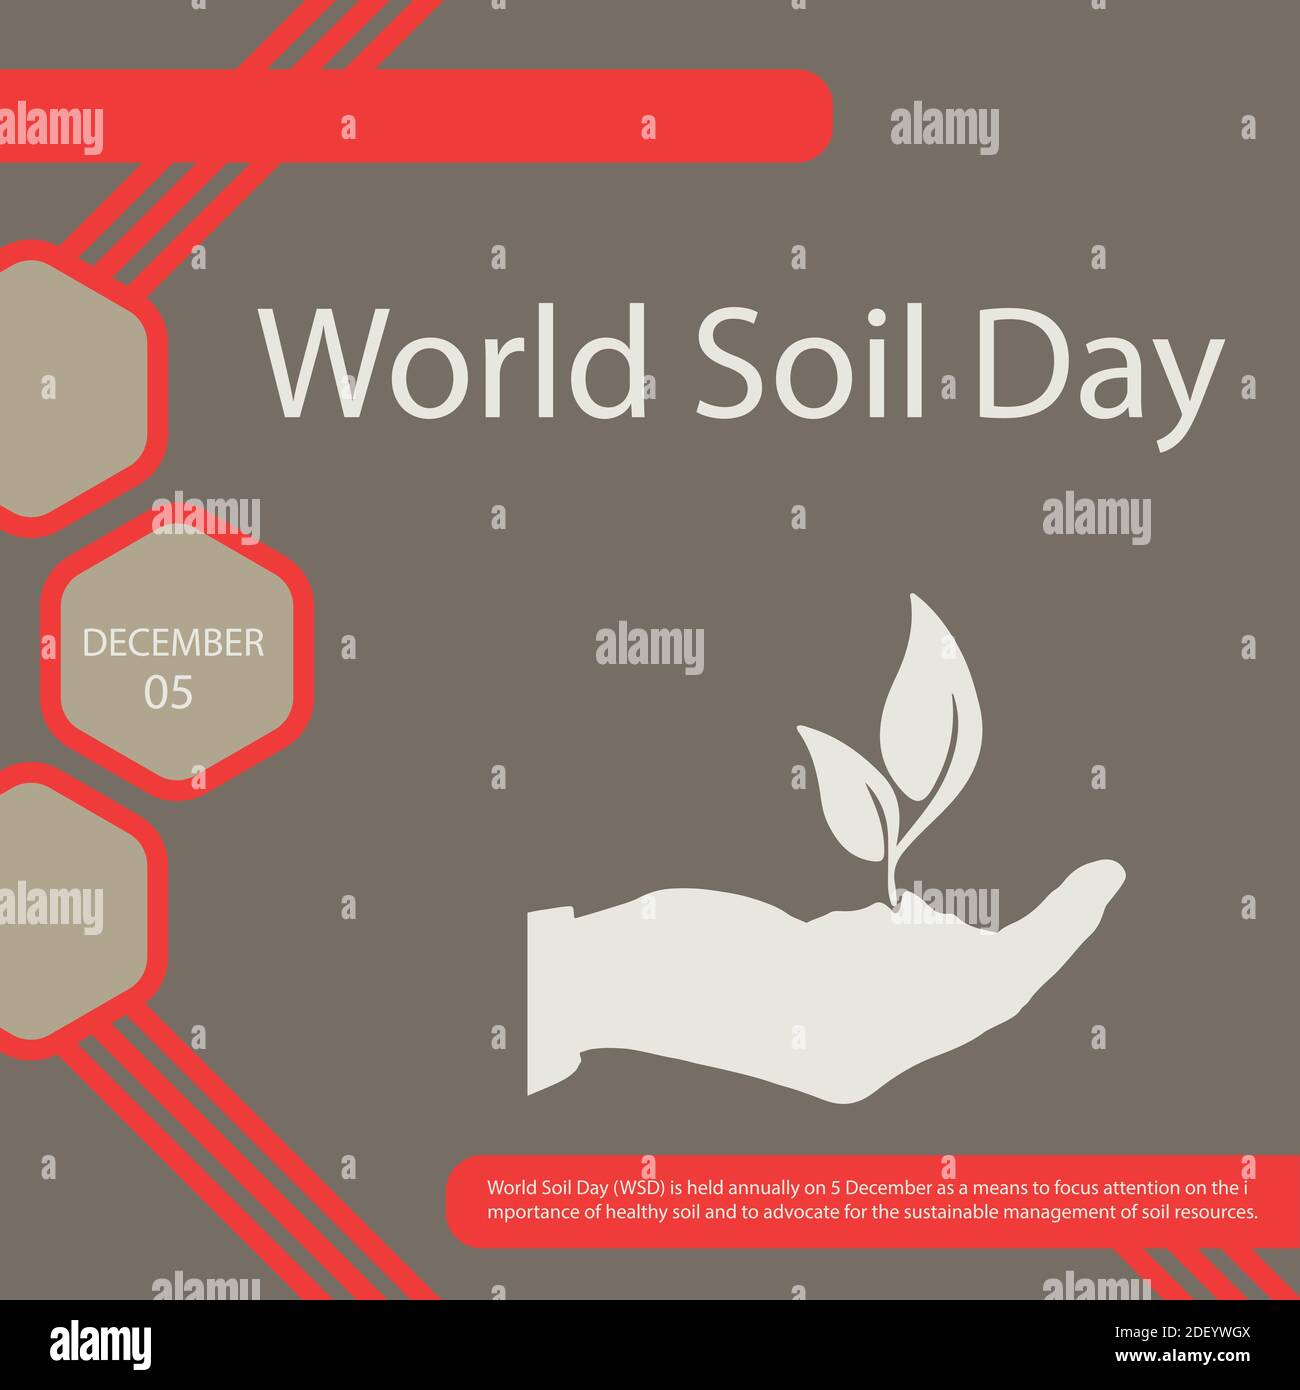 Der Weltbodentag (WSD) findet jährlich am 5. Dezember statt Als Mittel, um die Aufmerksamkeit auf die Bedeutung von zu konzentrieren Gesunde Böden und sich für die Nachhaltigkeit einzusetzen Stock Vektor